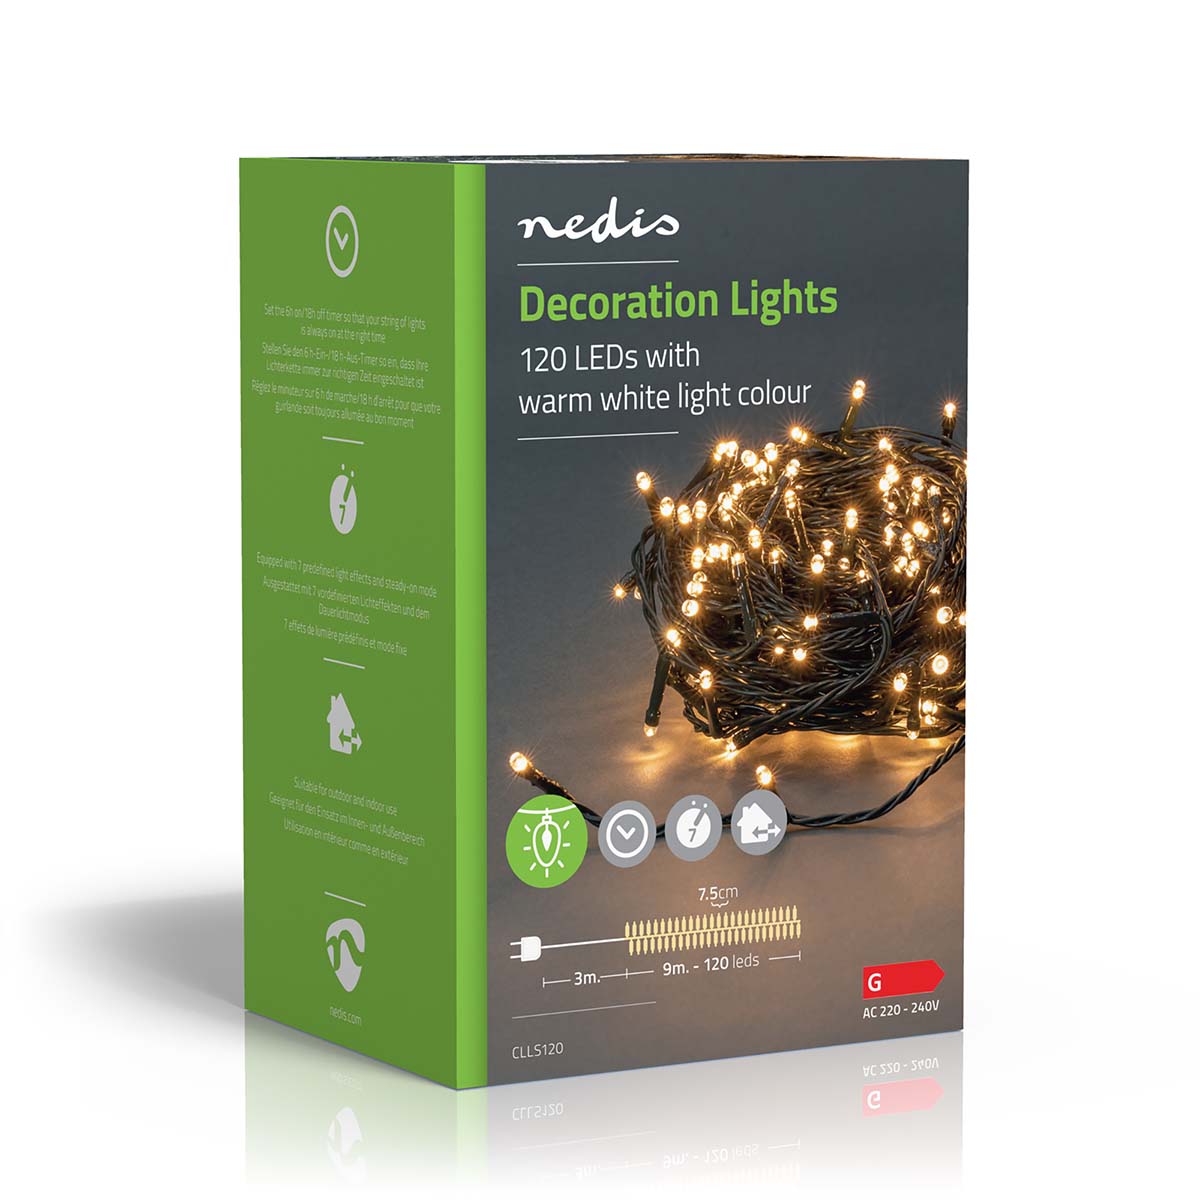 LED-Lichterkette warmweiss 120 LEDs 9m jetzt kaufen - Aktionskönig